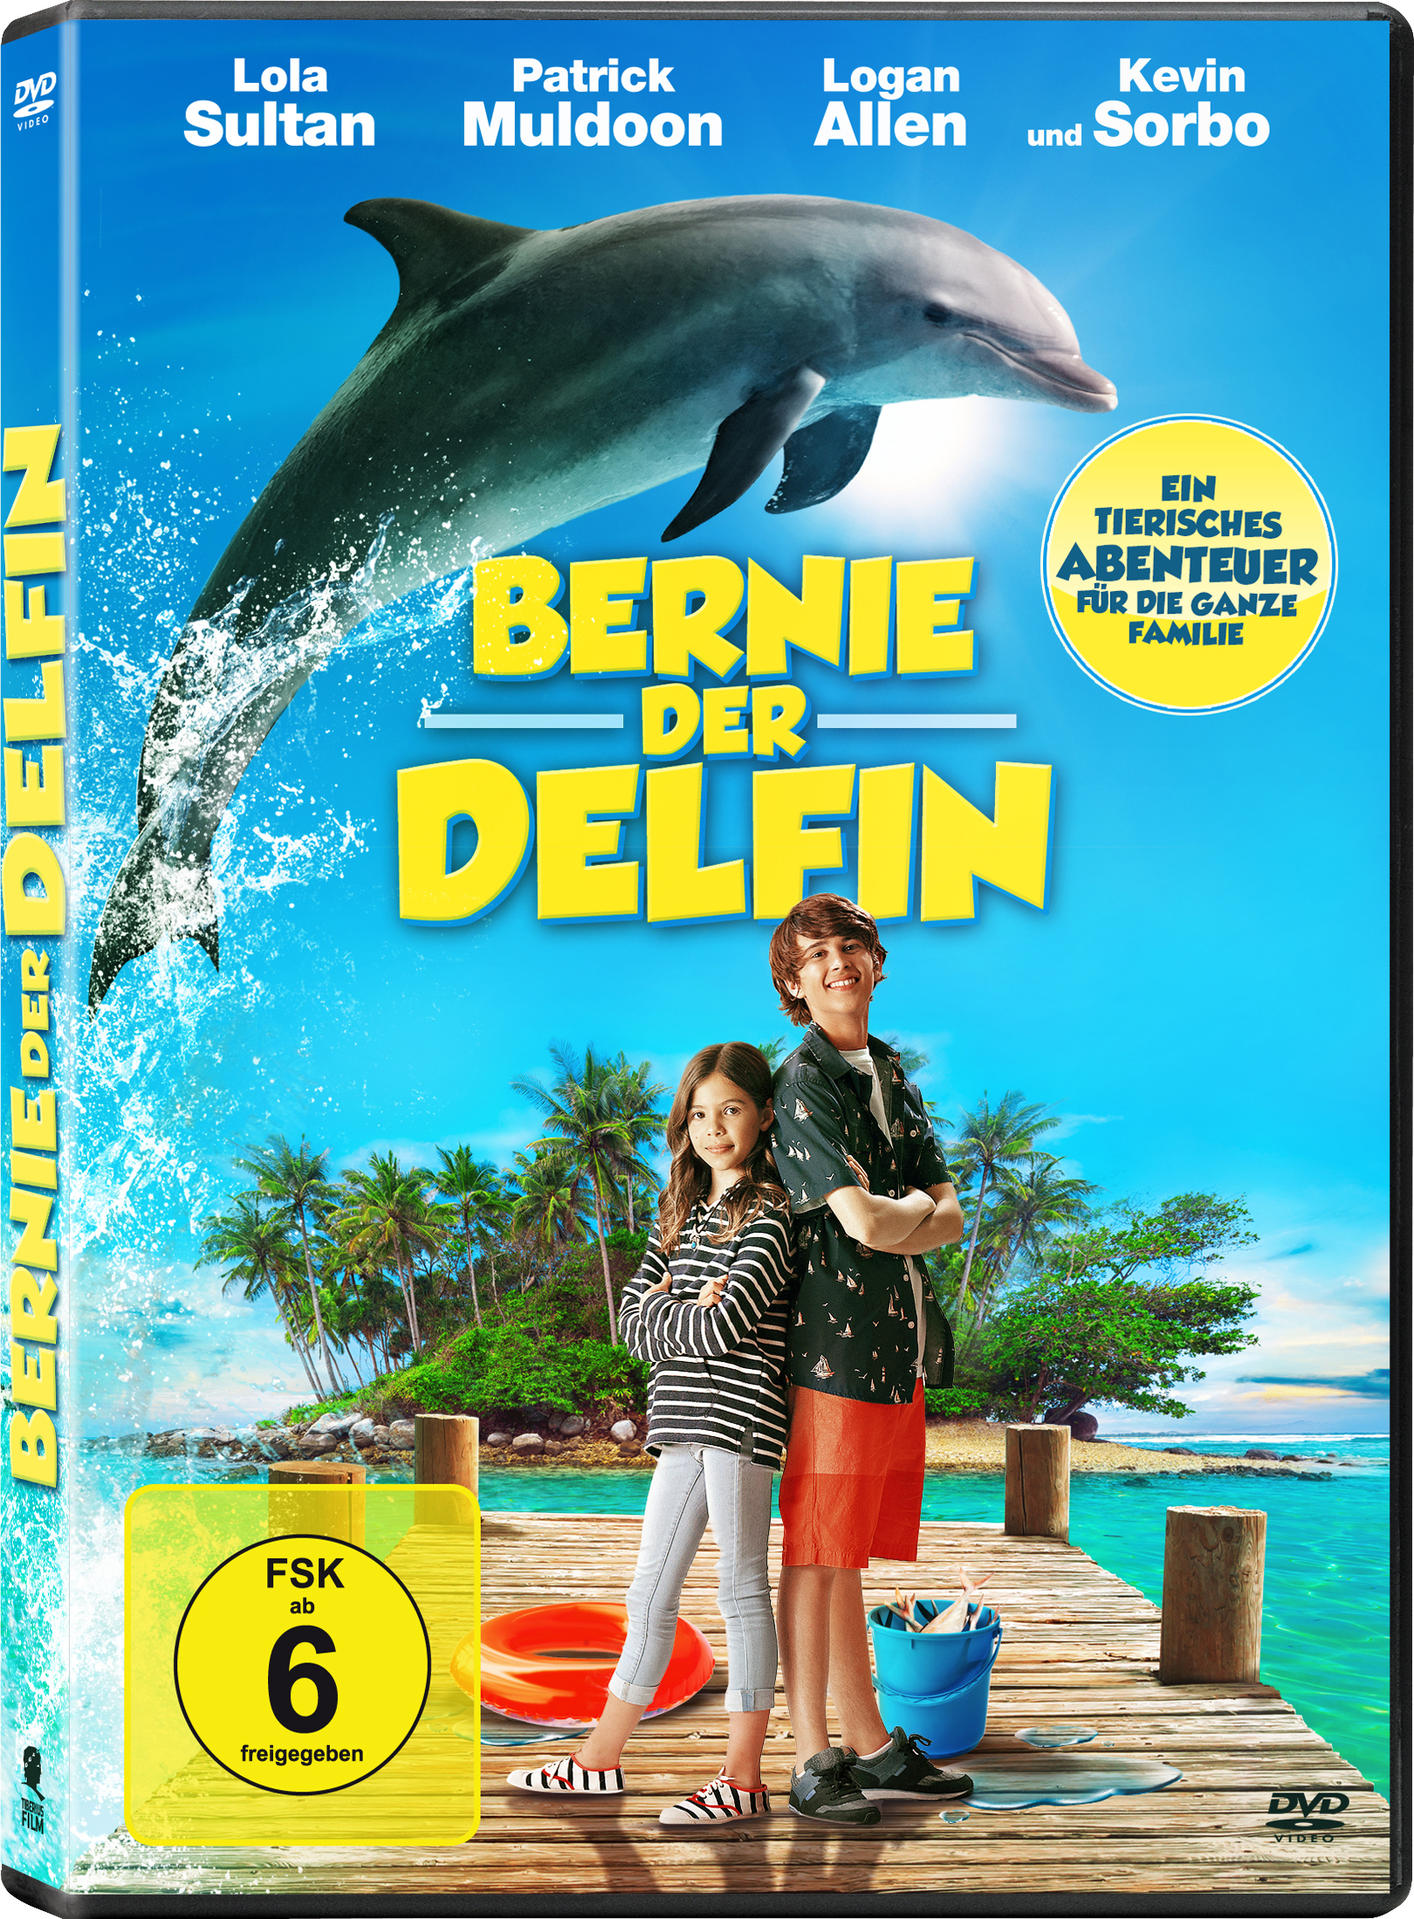 Delfin der DVD Bernie,